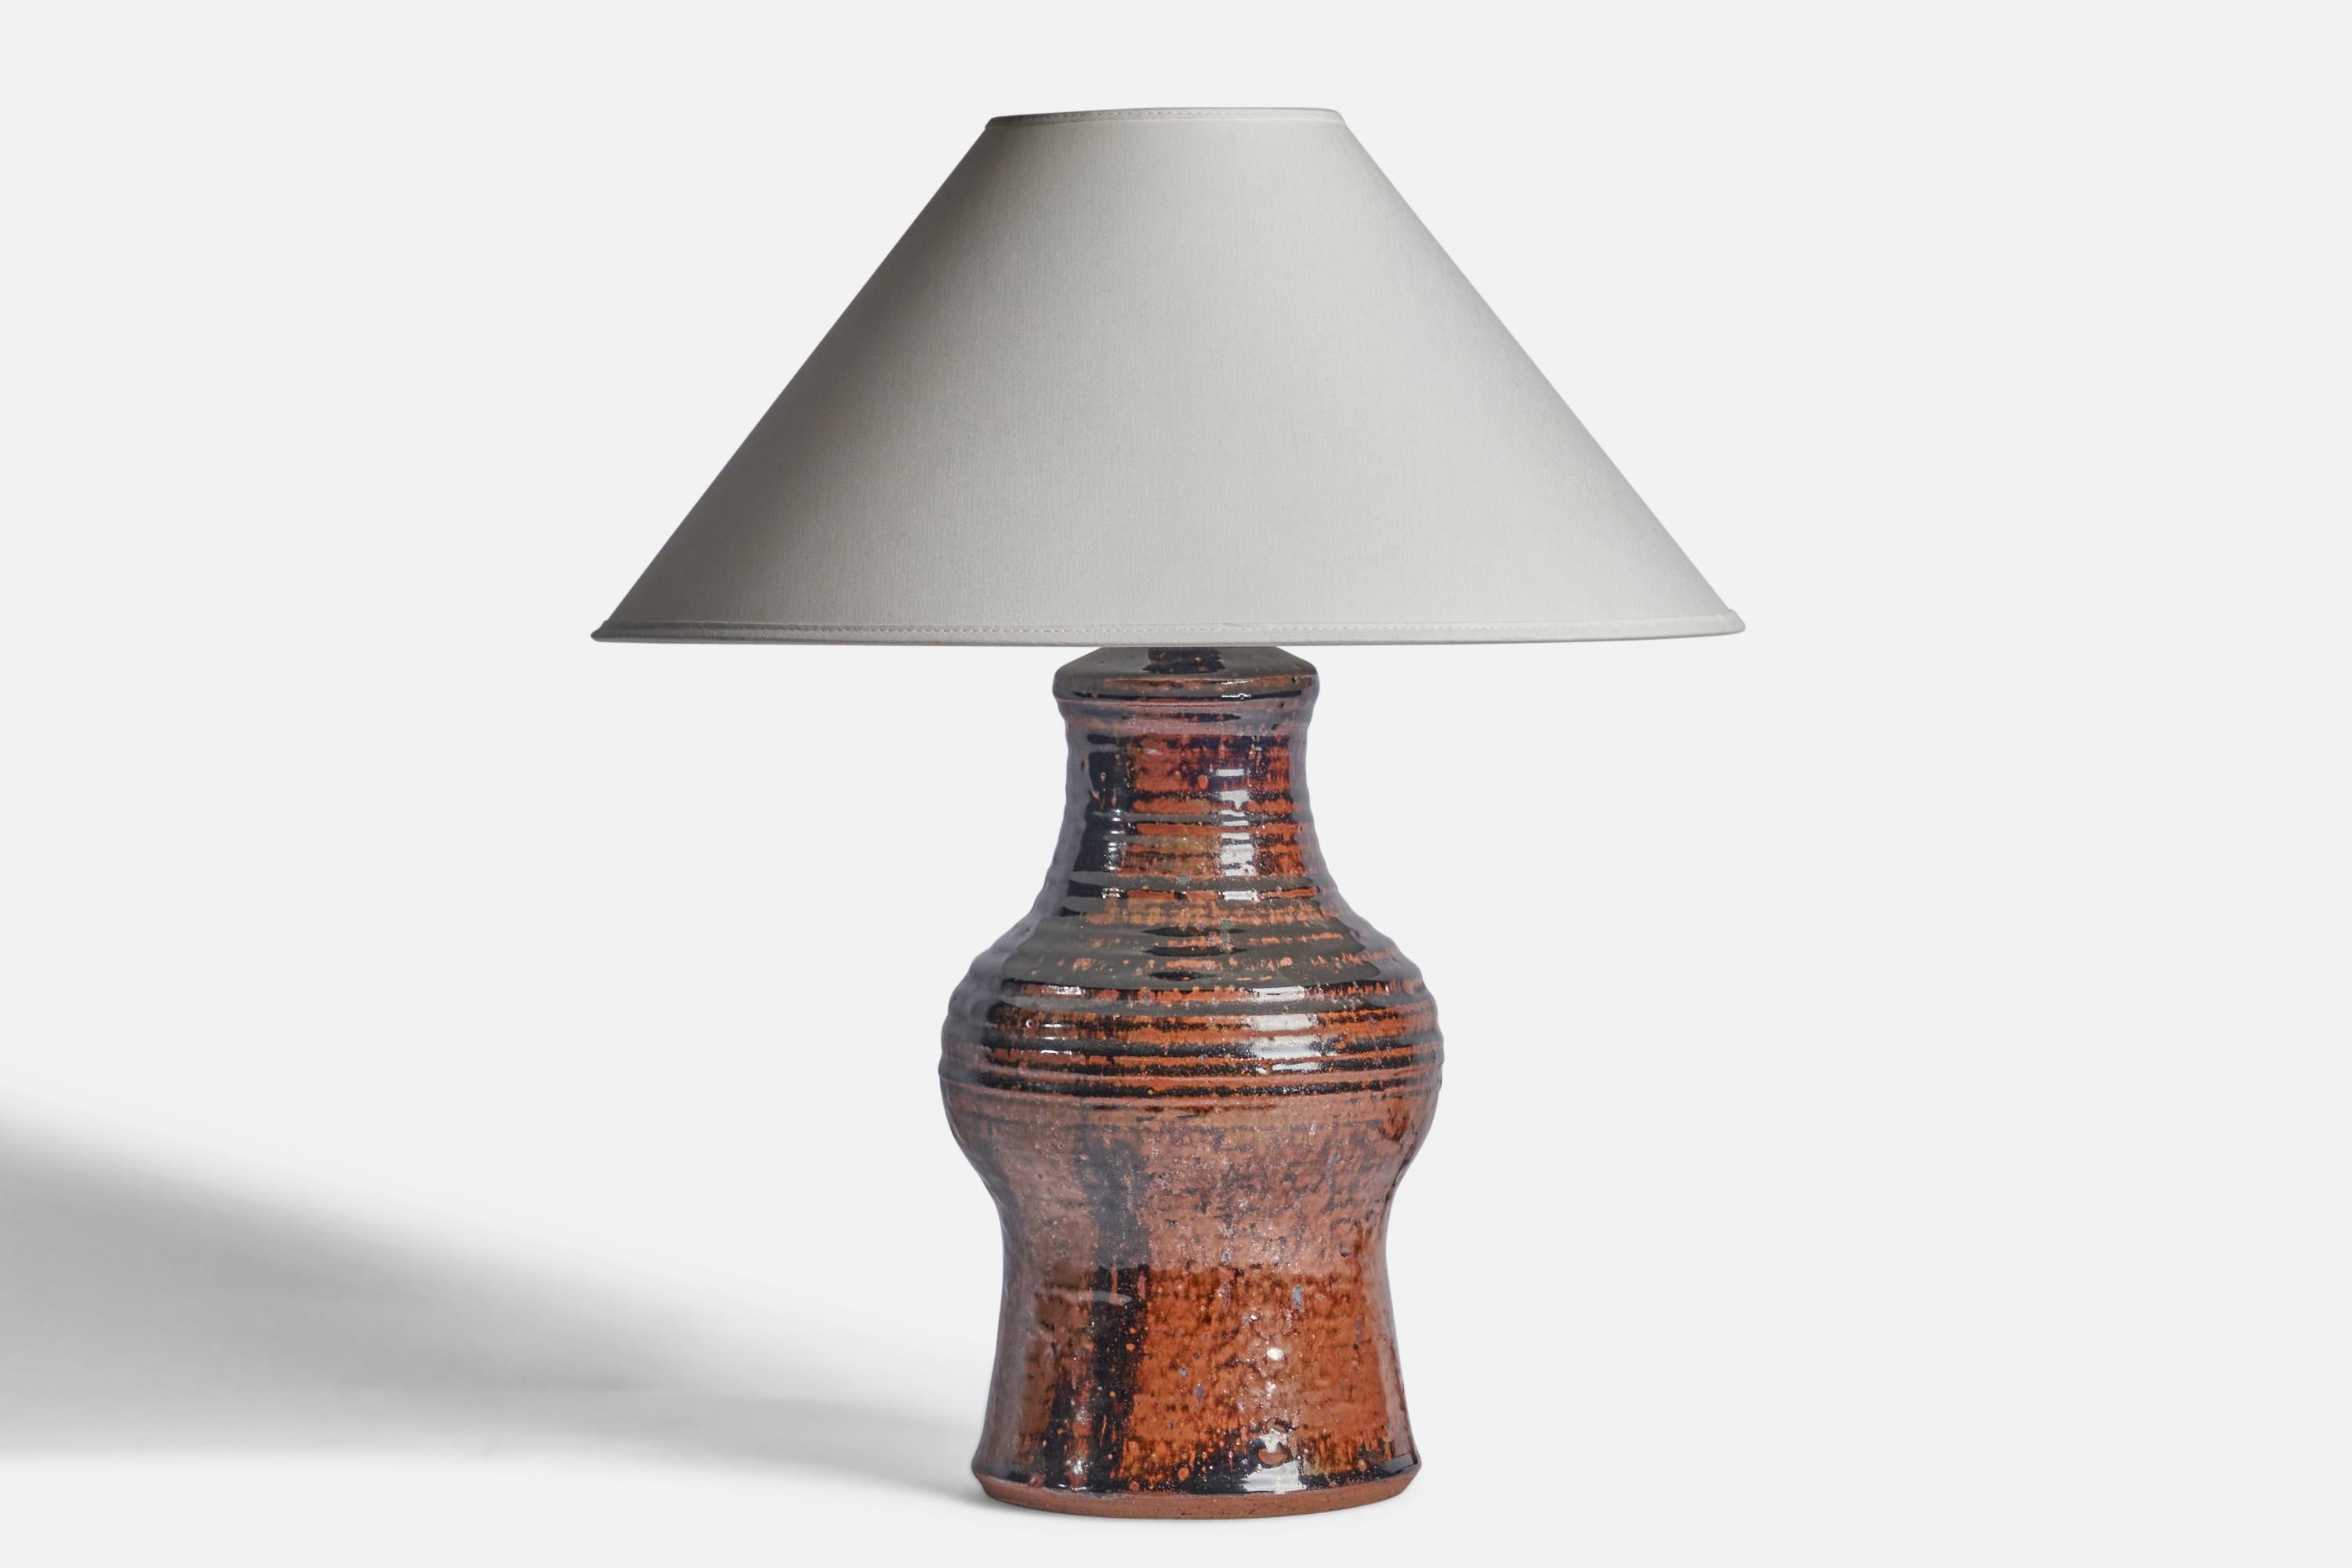 Tischlampe aus braunem und schwarz glasiertem Steingut, entworfen und hergestellt in Dänemark, ca. 1950er Jahre.

Abmessungen der Lampe (Zoll): 14,5 H x 6,5